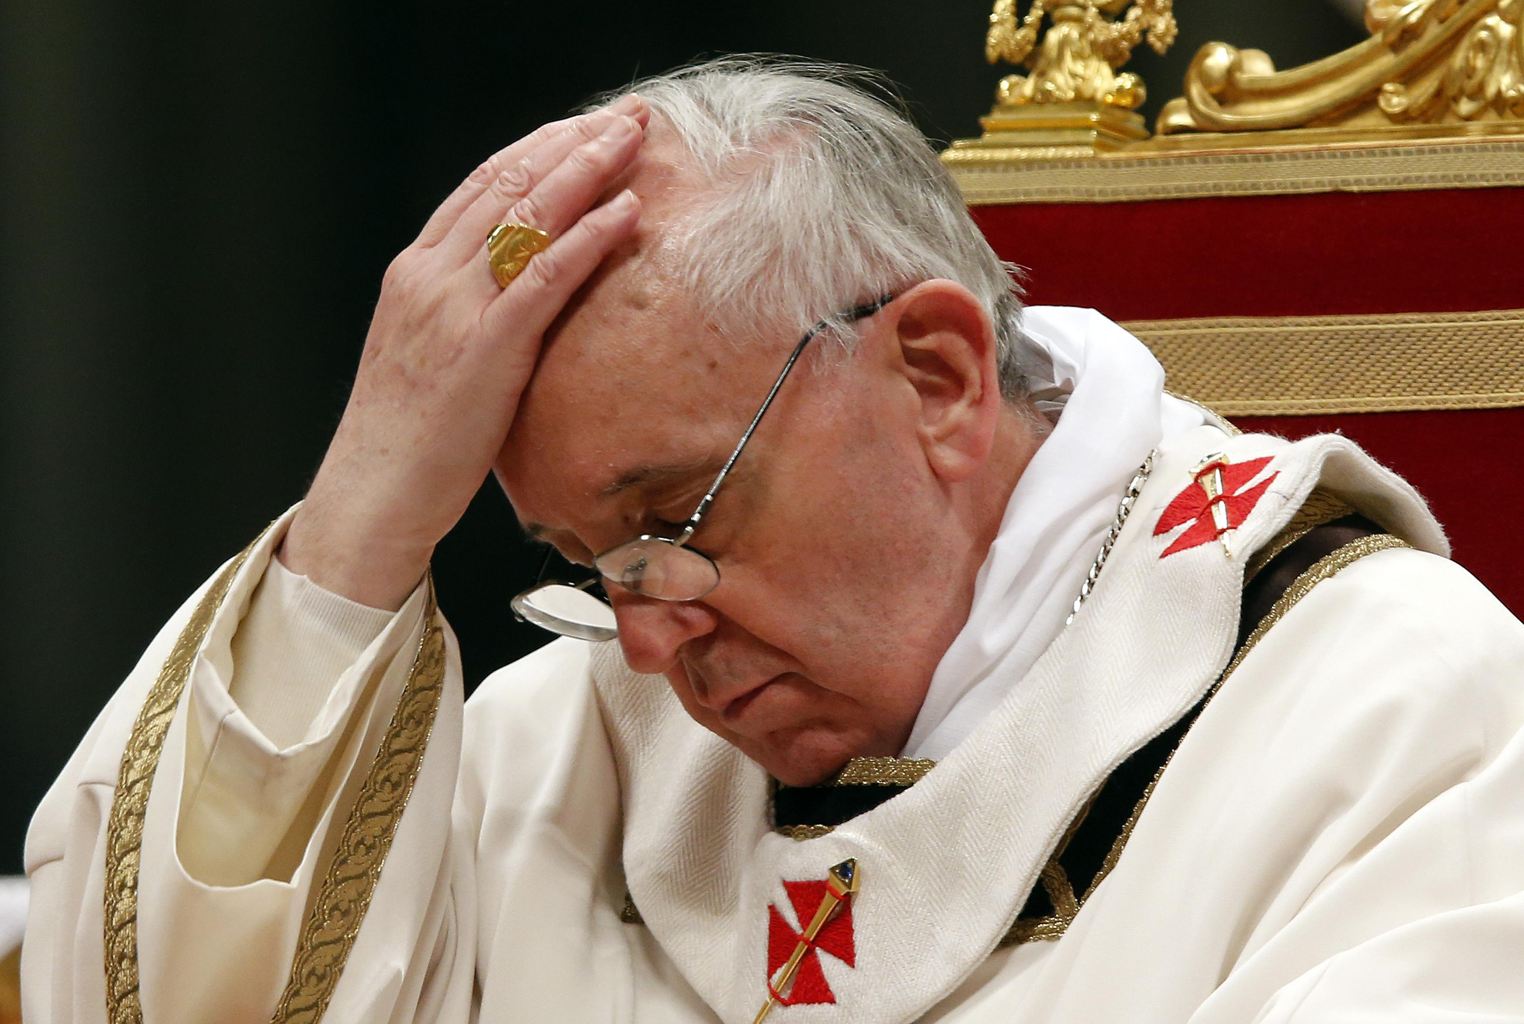 El Papa explica que canceló visita a enfermos por un dolor de cabeza y náuseas